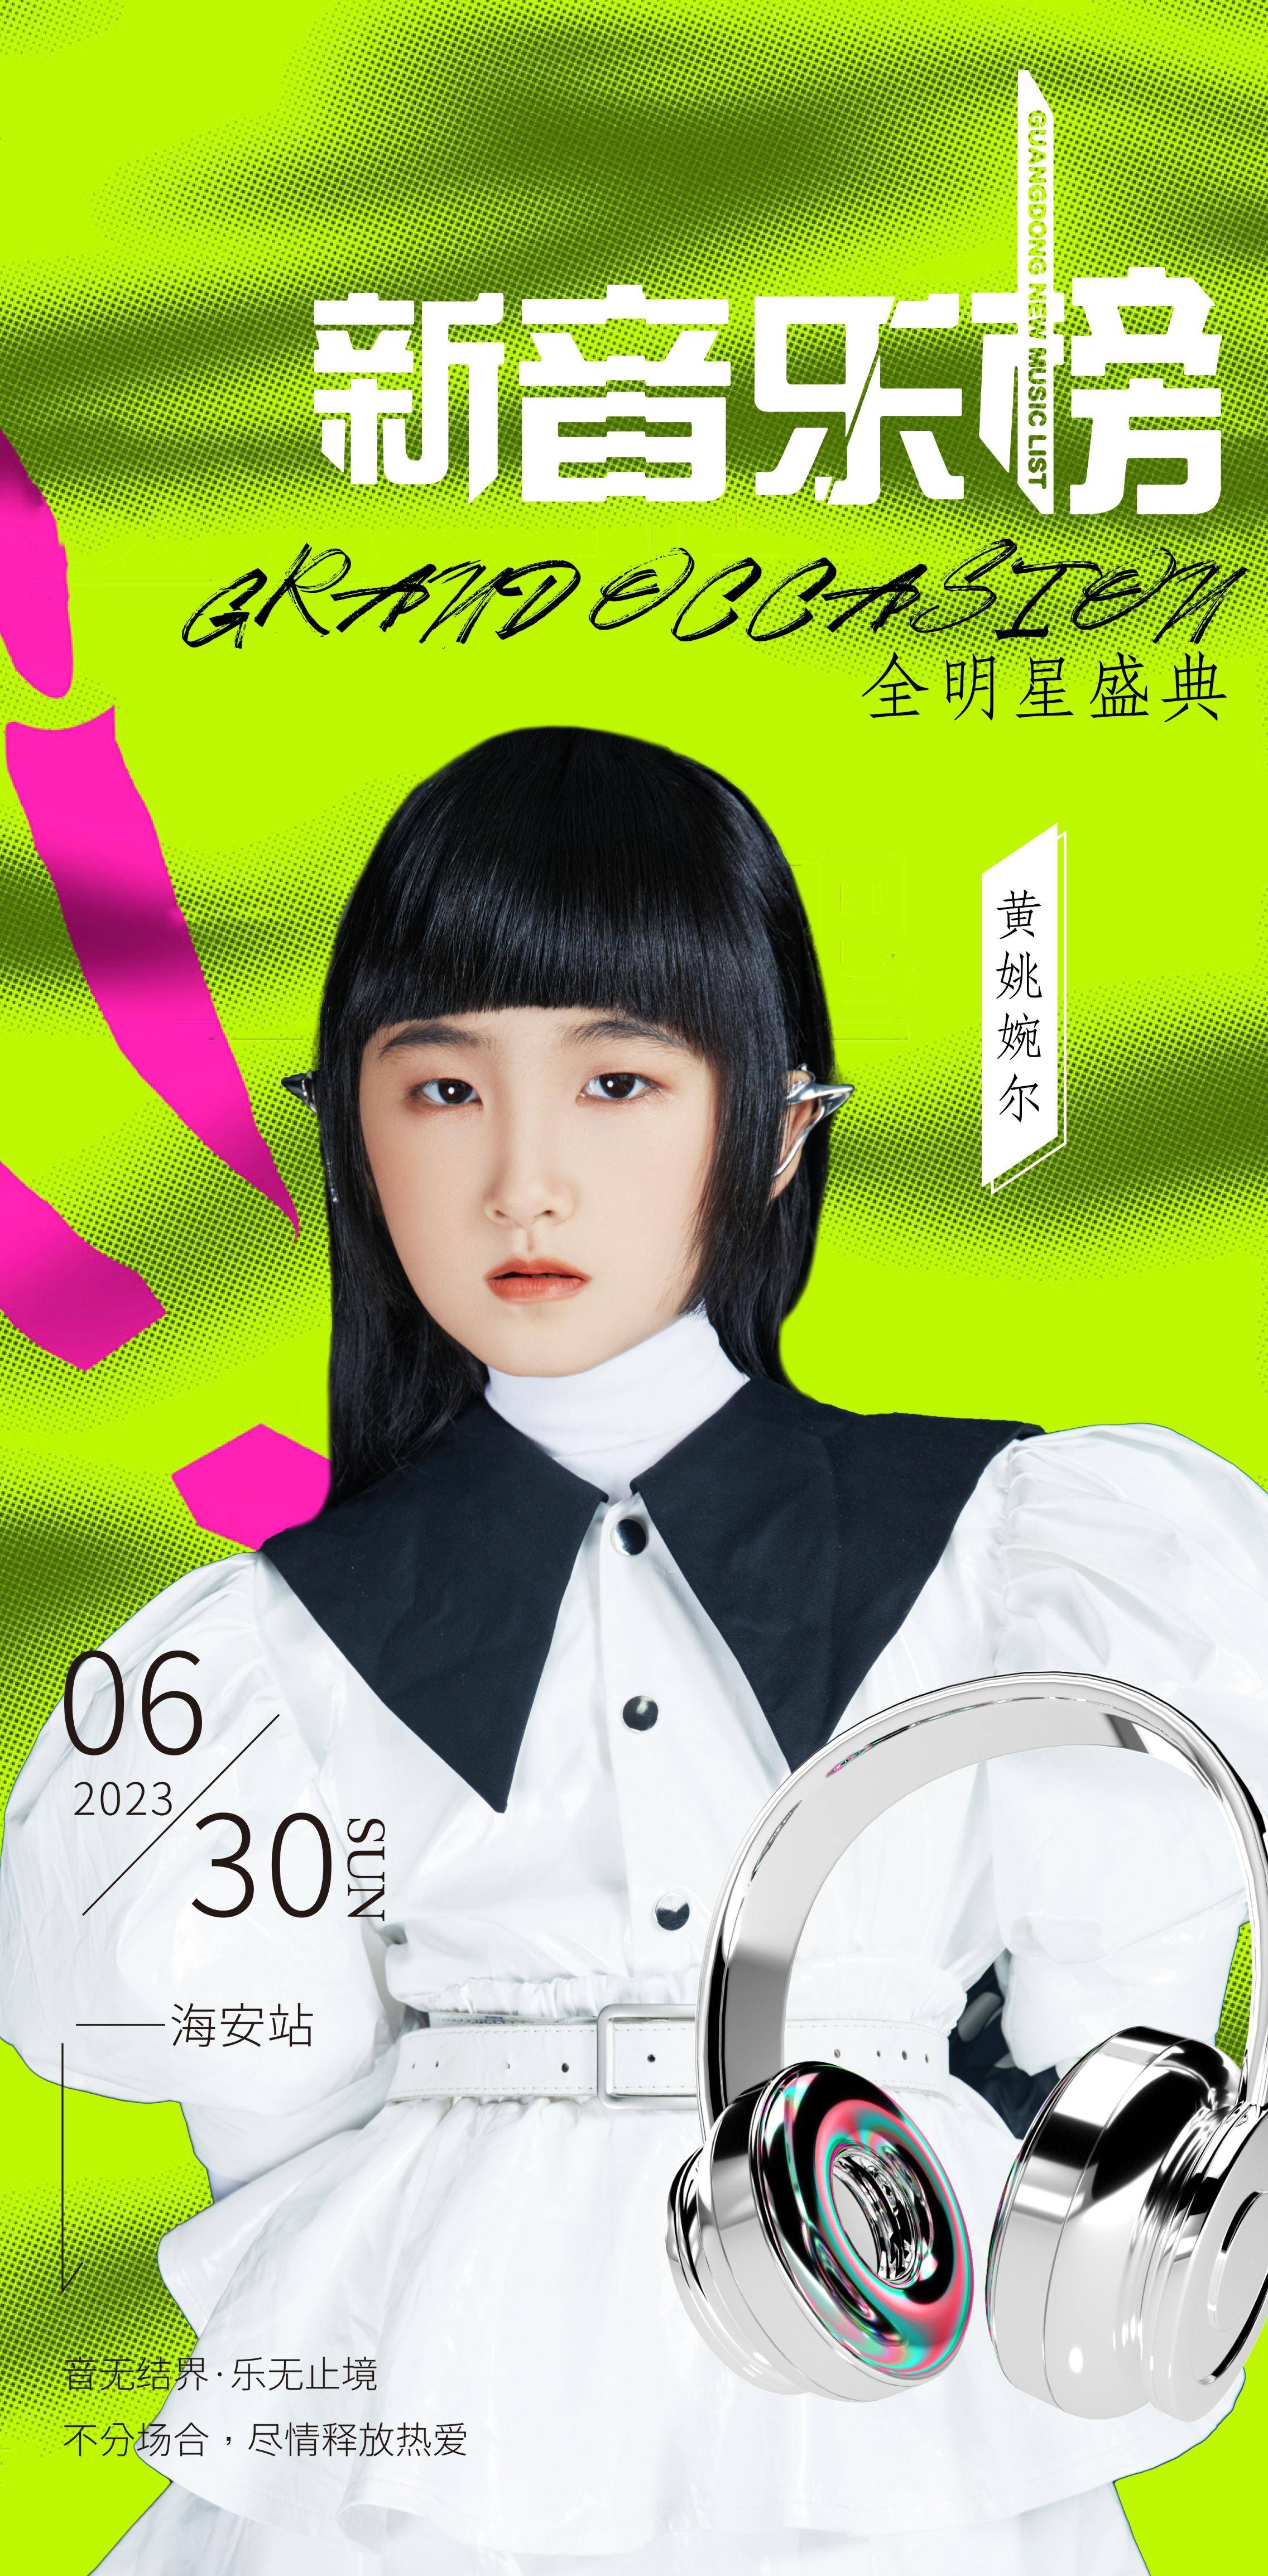 米乐m62023新音乐榜全明星盛典黄姚婉尔荣获年度最受欢迎少儿女歌手奖(图1)